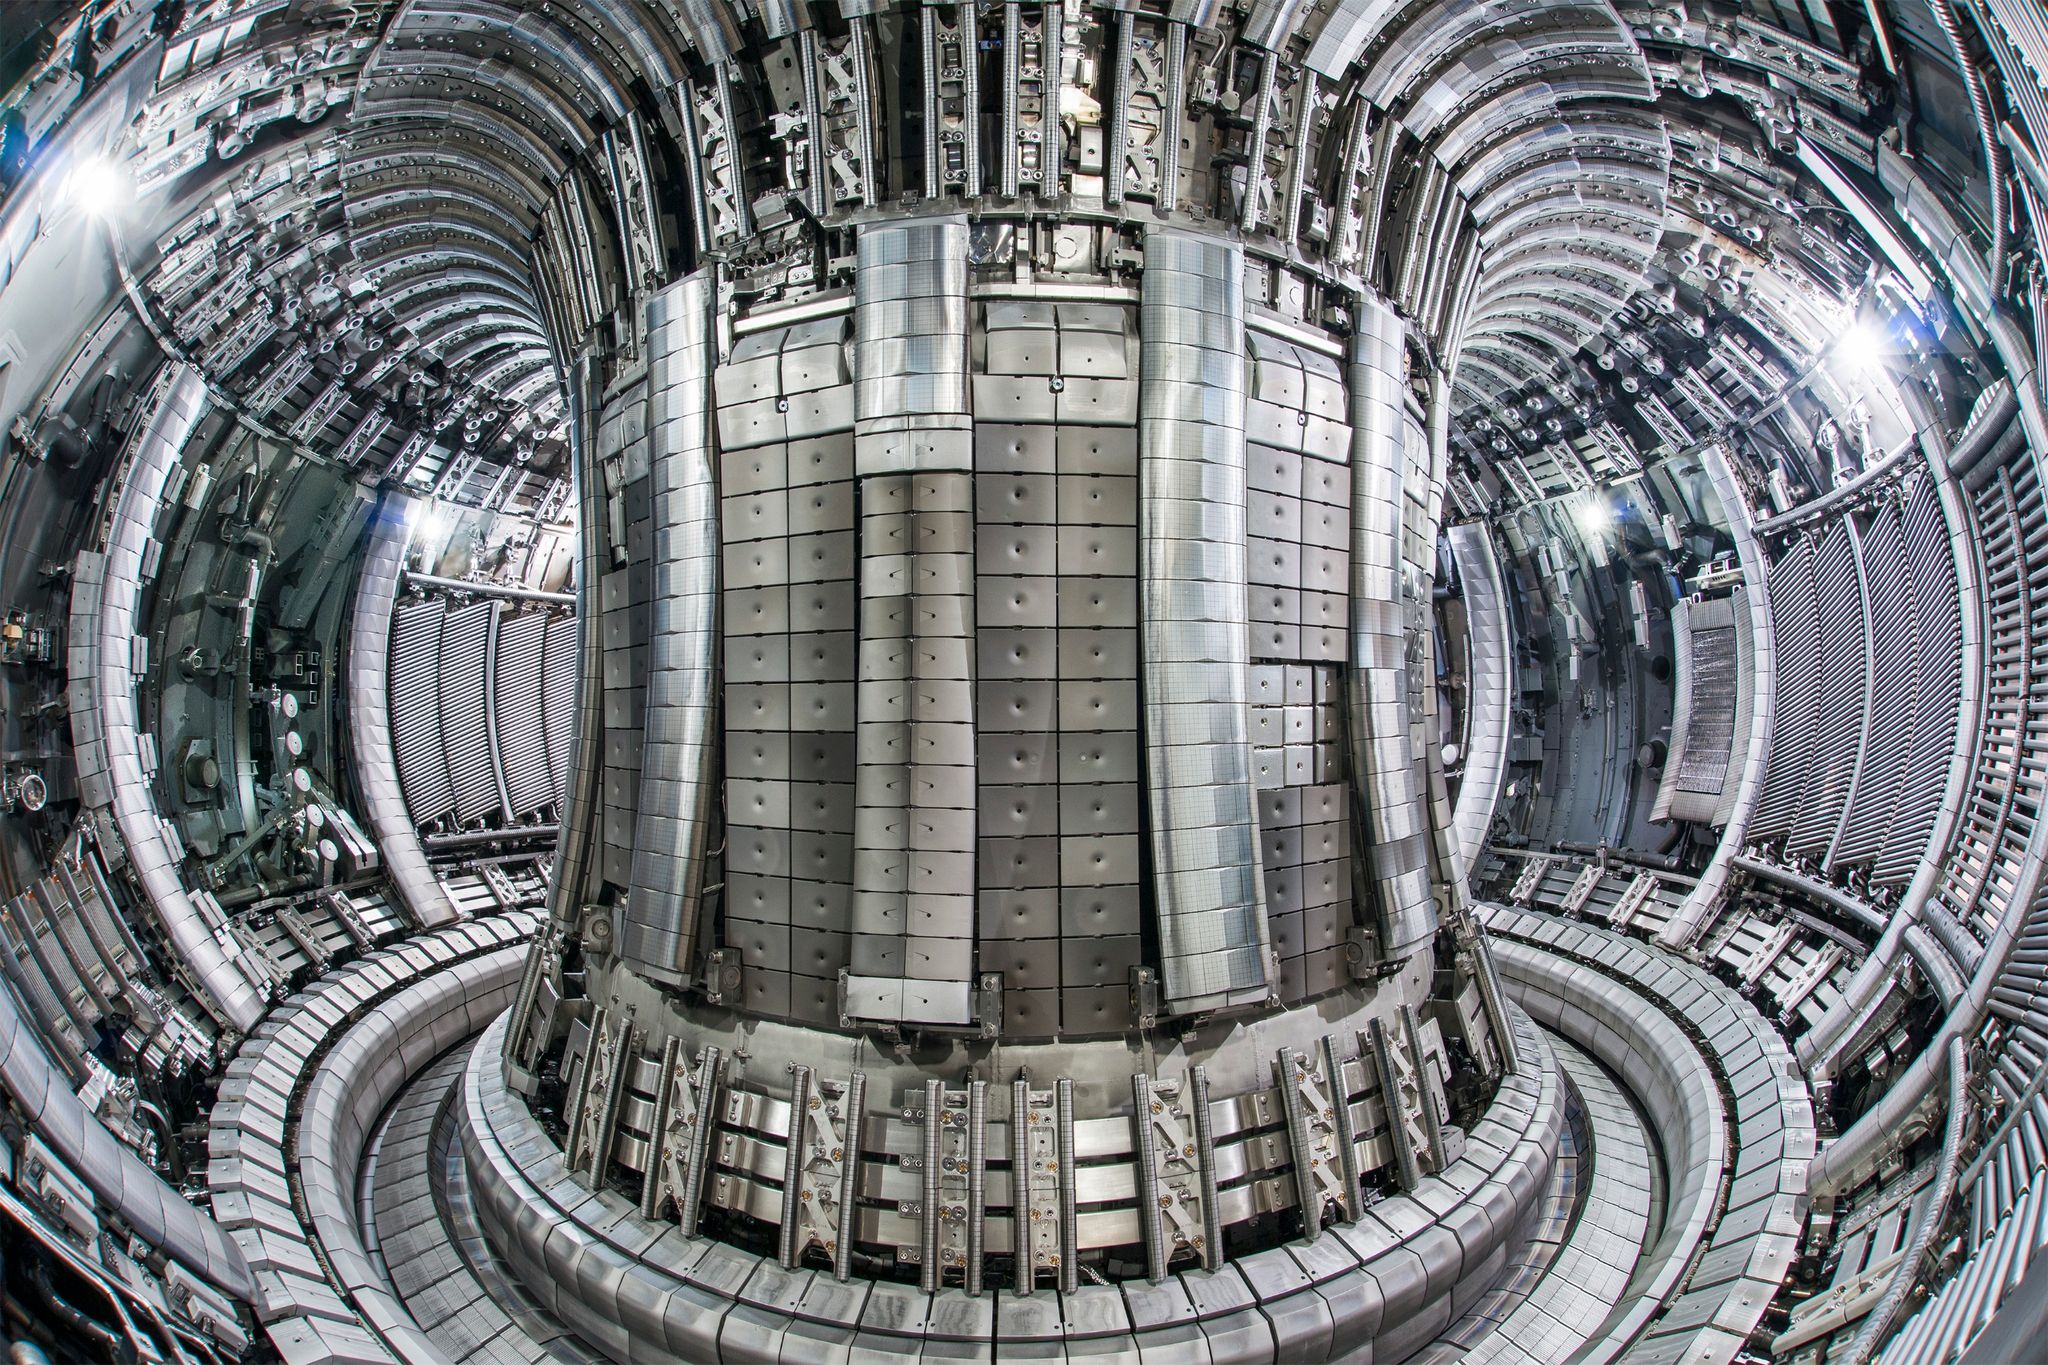 Das Innere der Kernfusionsanlage «Jet» (Joint European Torus) im britischen Culham.